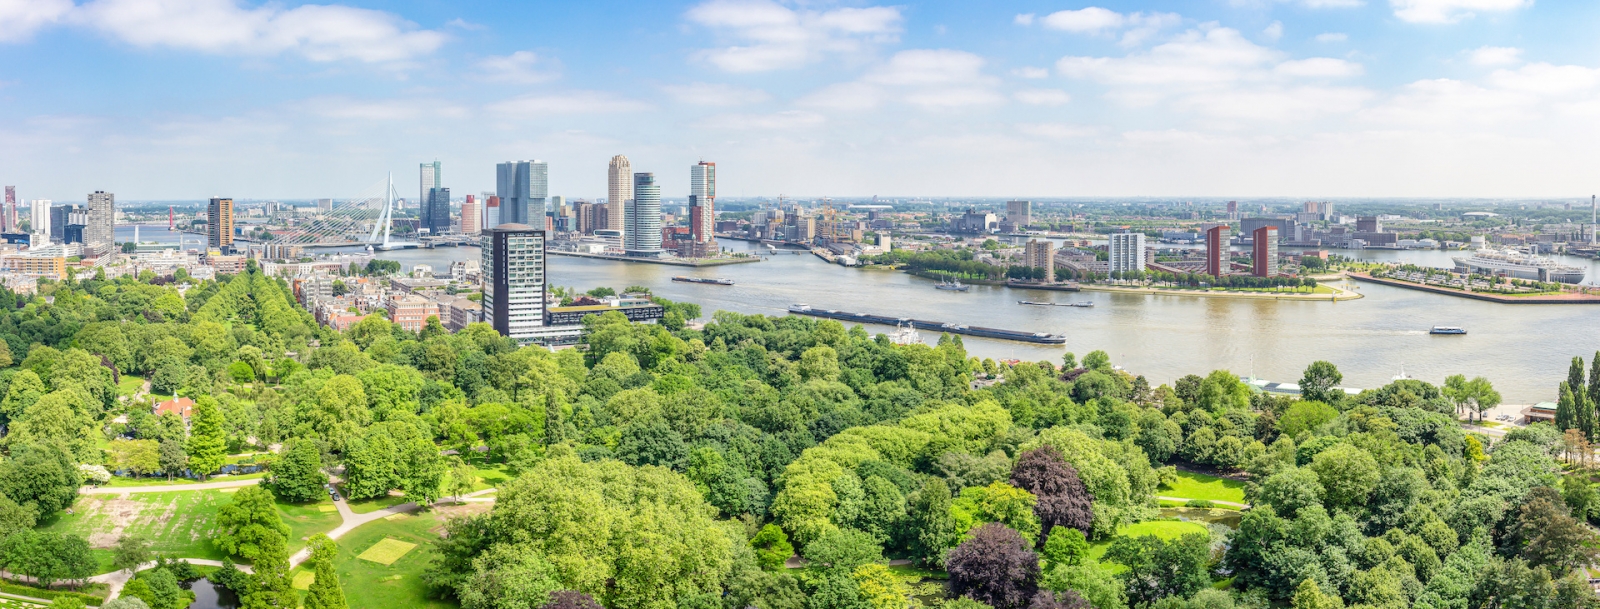 Vista panorámica de Rotterdam con el río Maas y el puente Erasmus, el parque en Euromast, los edificios en la terminal de cruceros y el Hotel New York, Katendrecht con SS Rotterdam